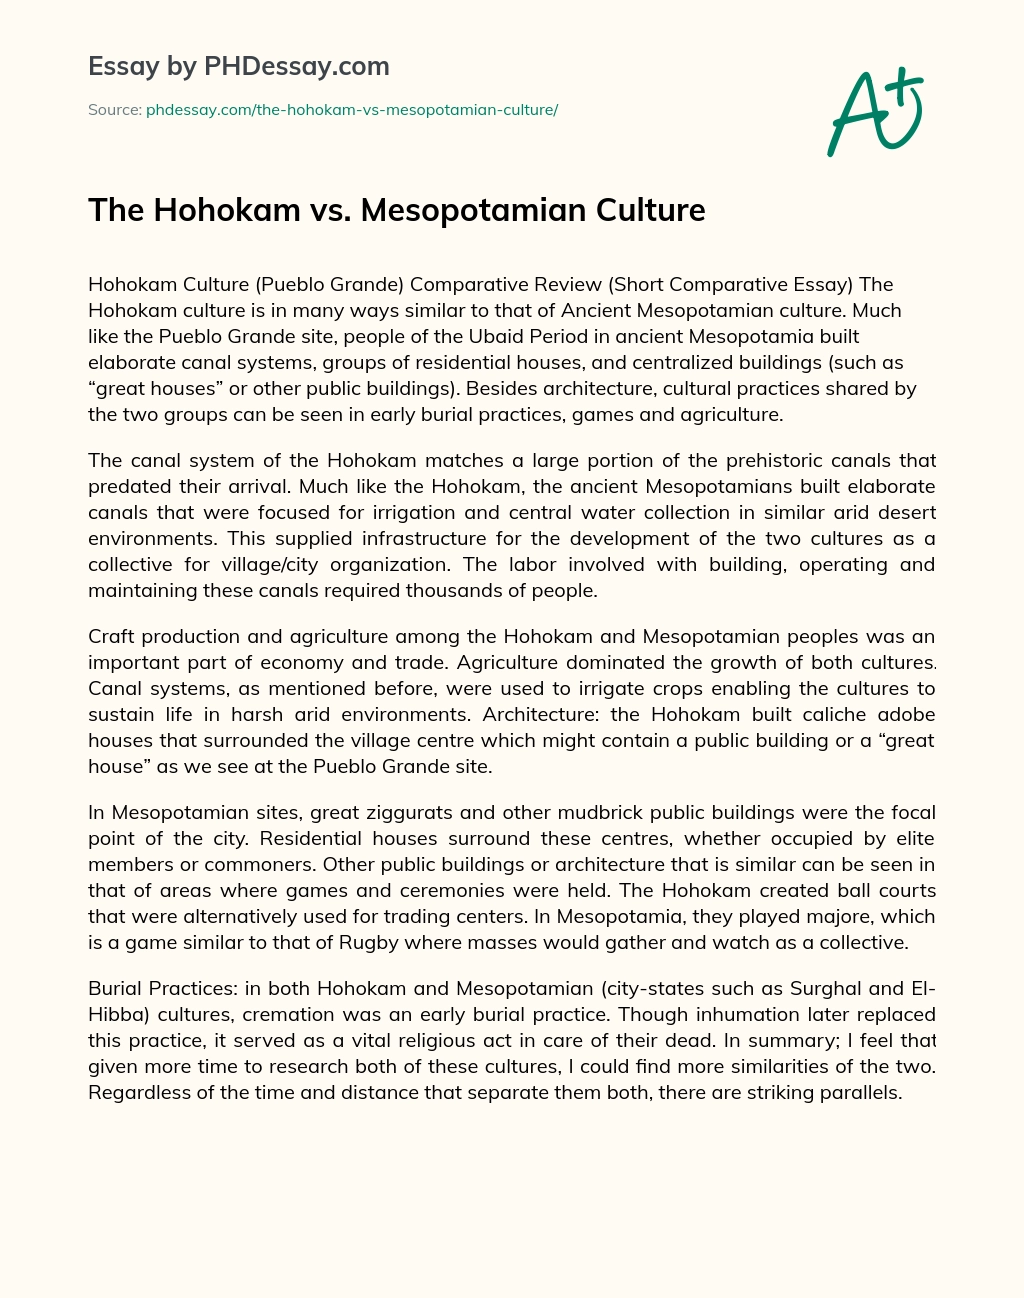 The Hohokam vs. Mesopotamian Culture essay